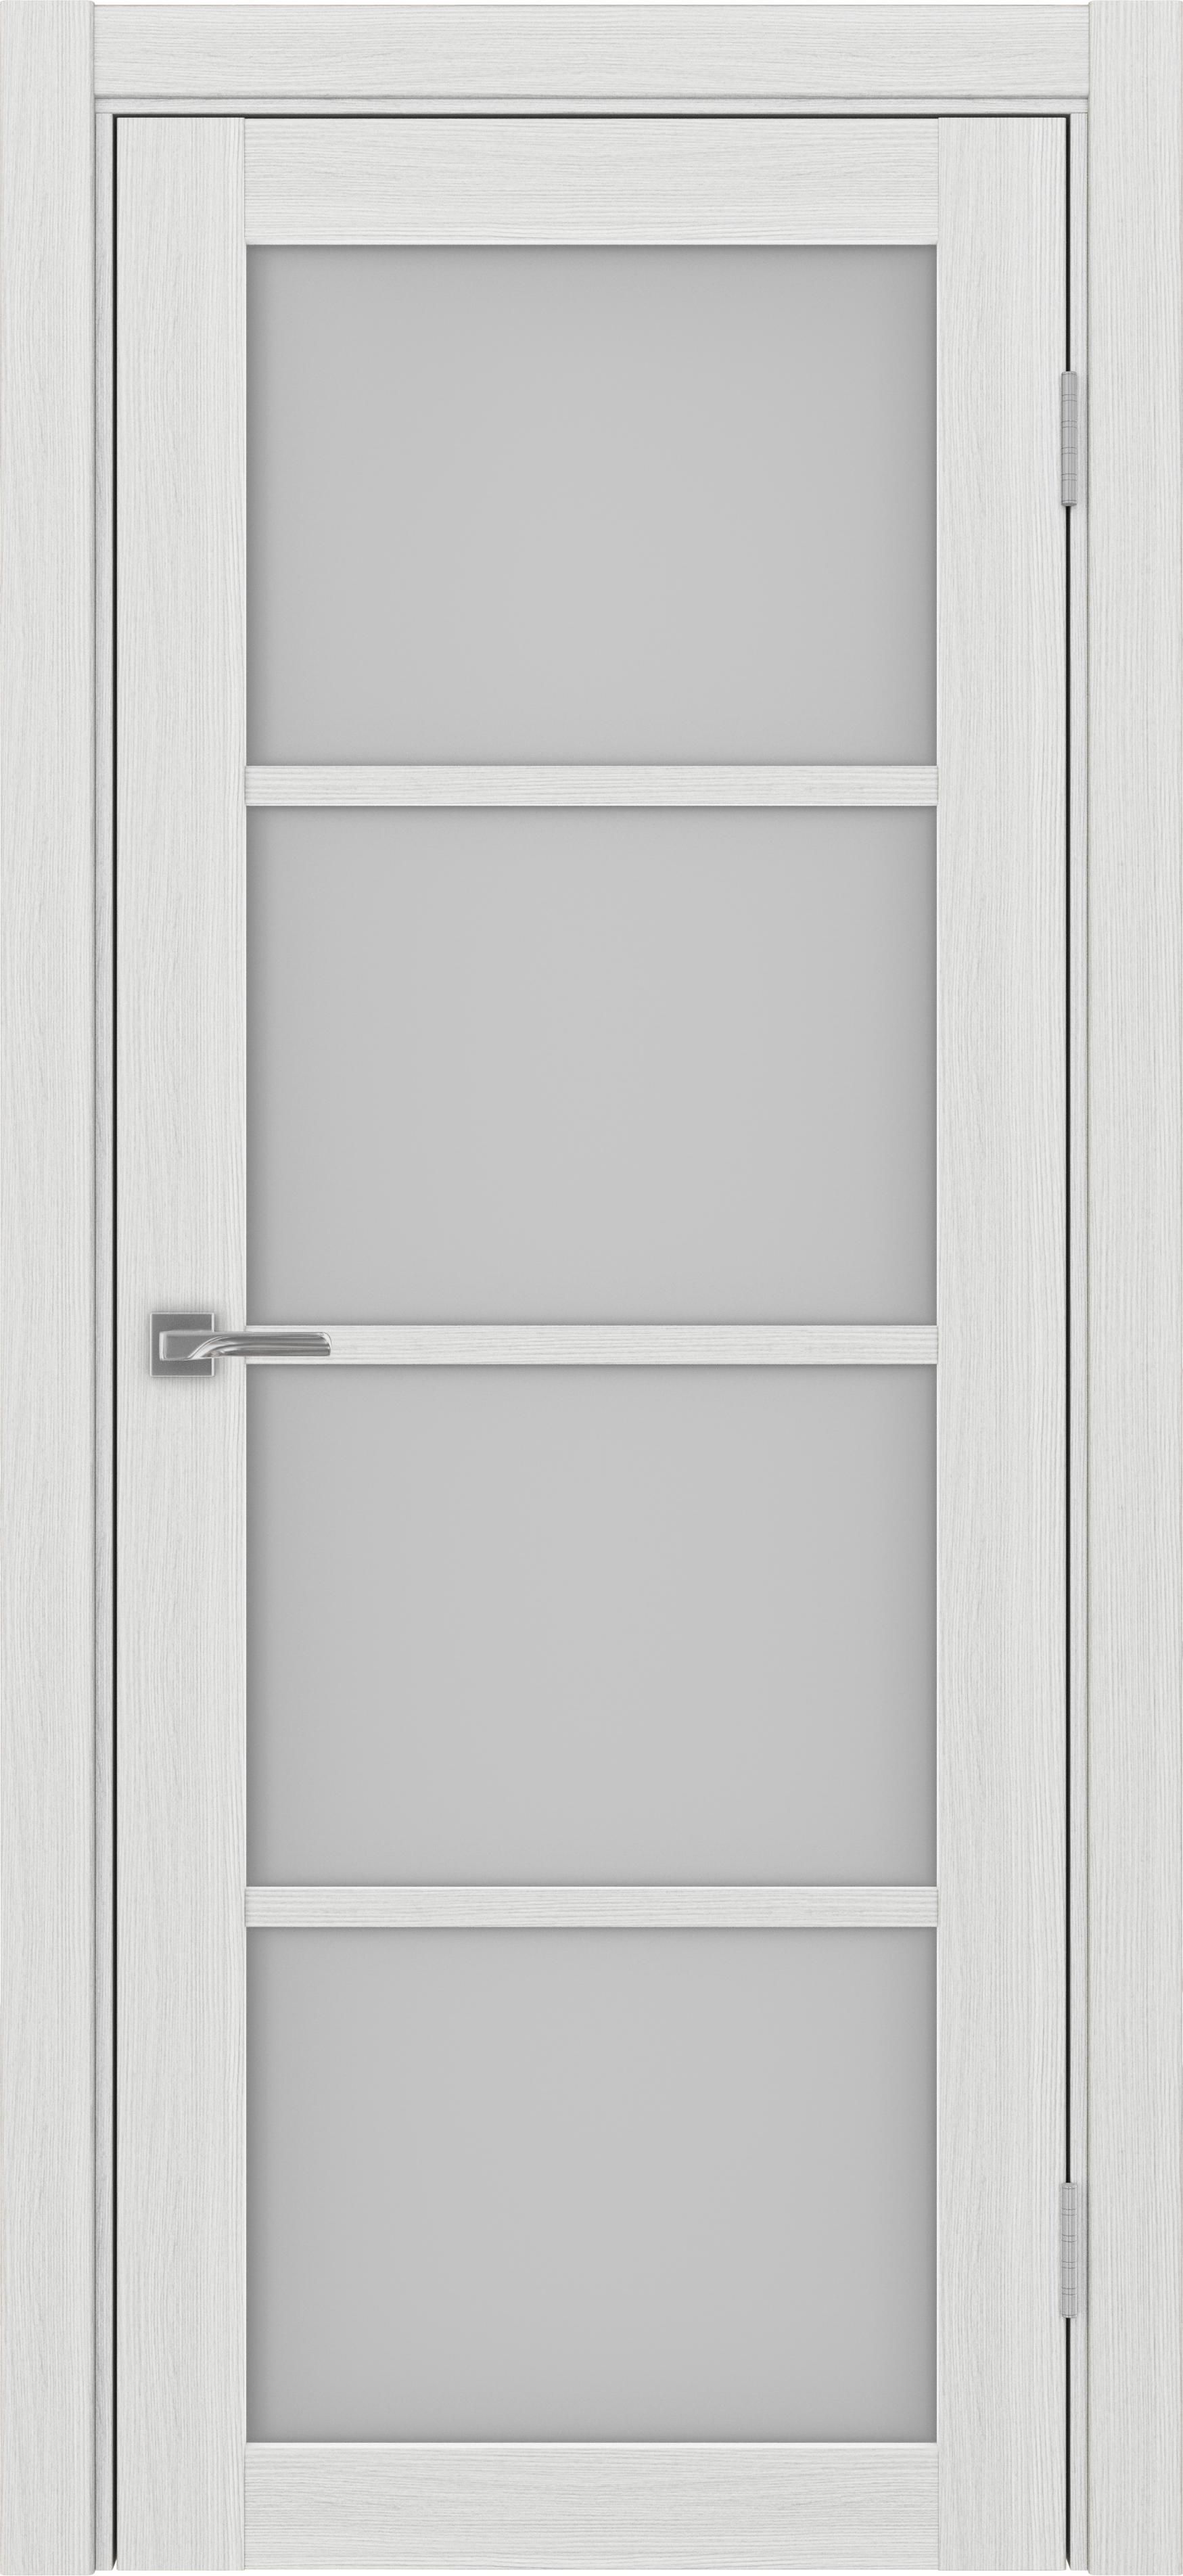 Межкомнатная дверь «Турин 540.2222 Ясень серебристый» стекло сатин